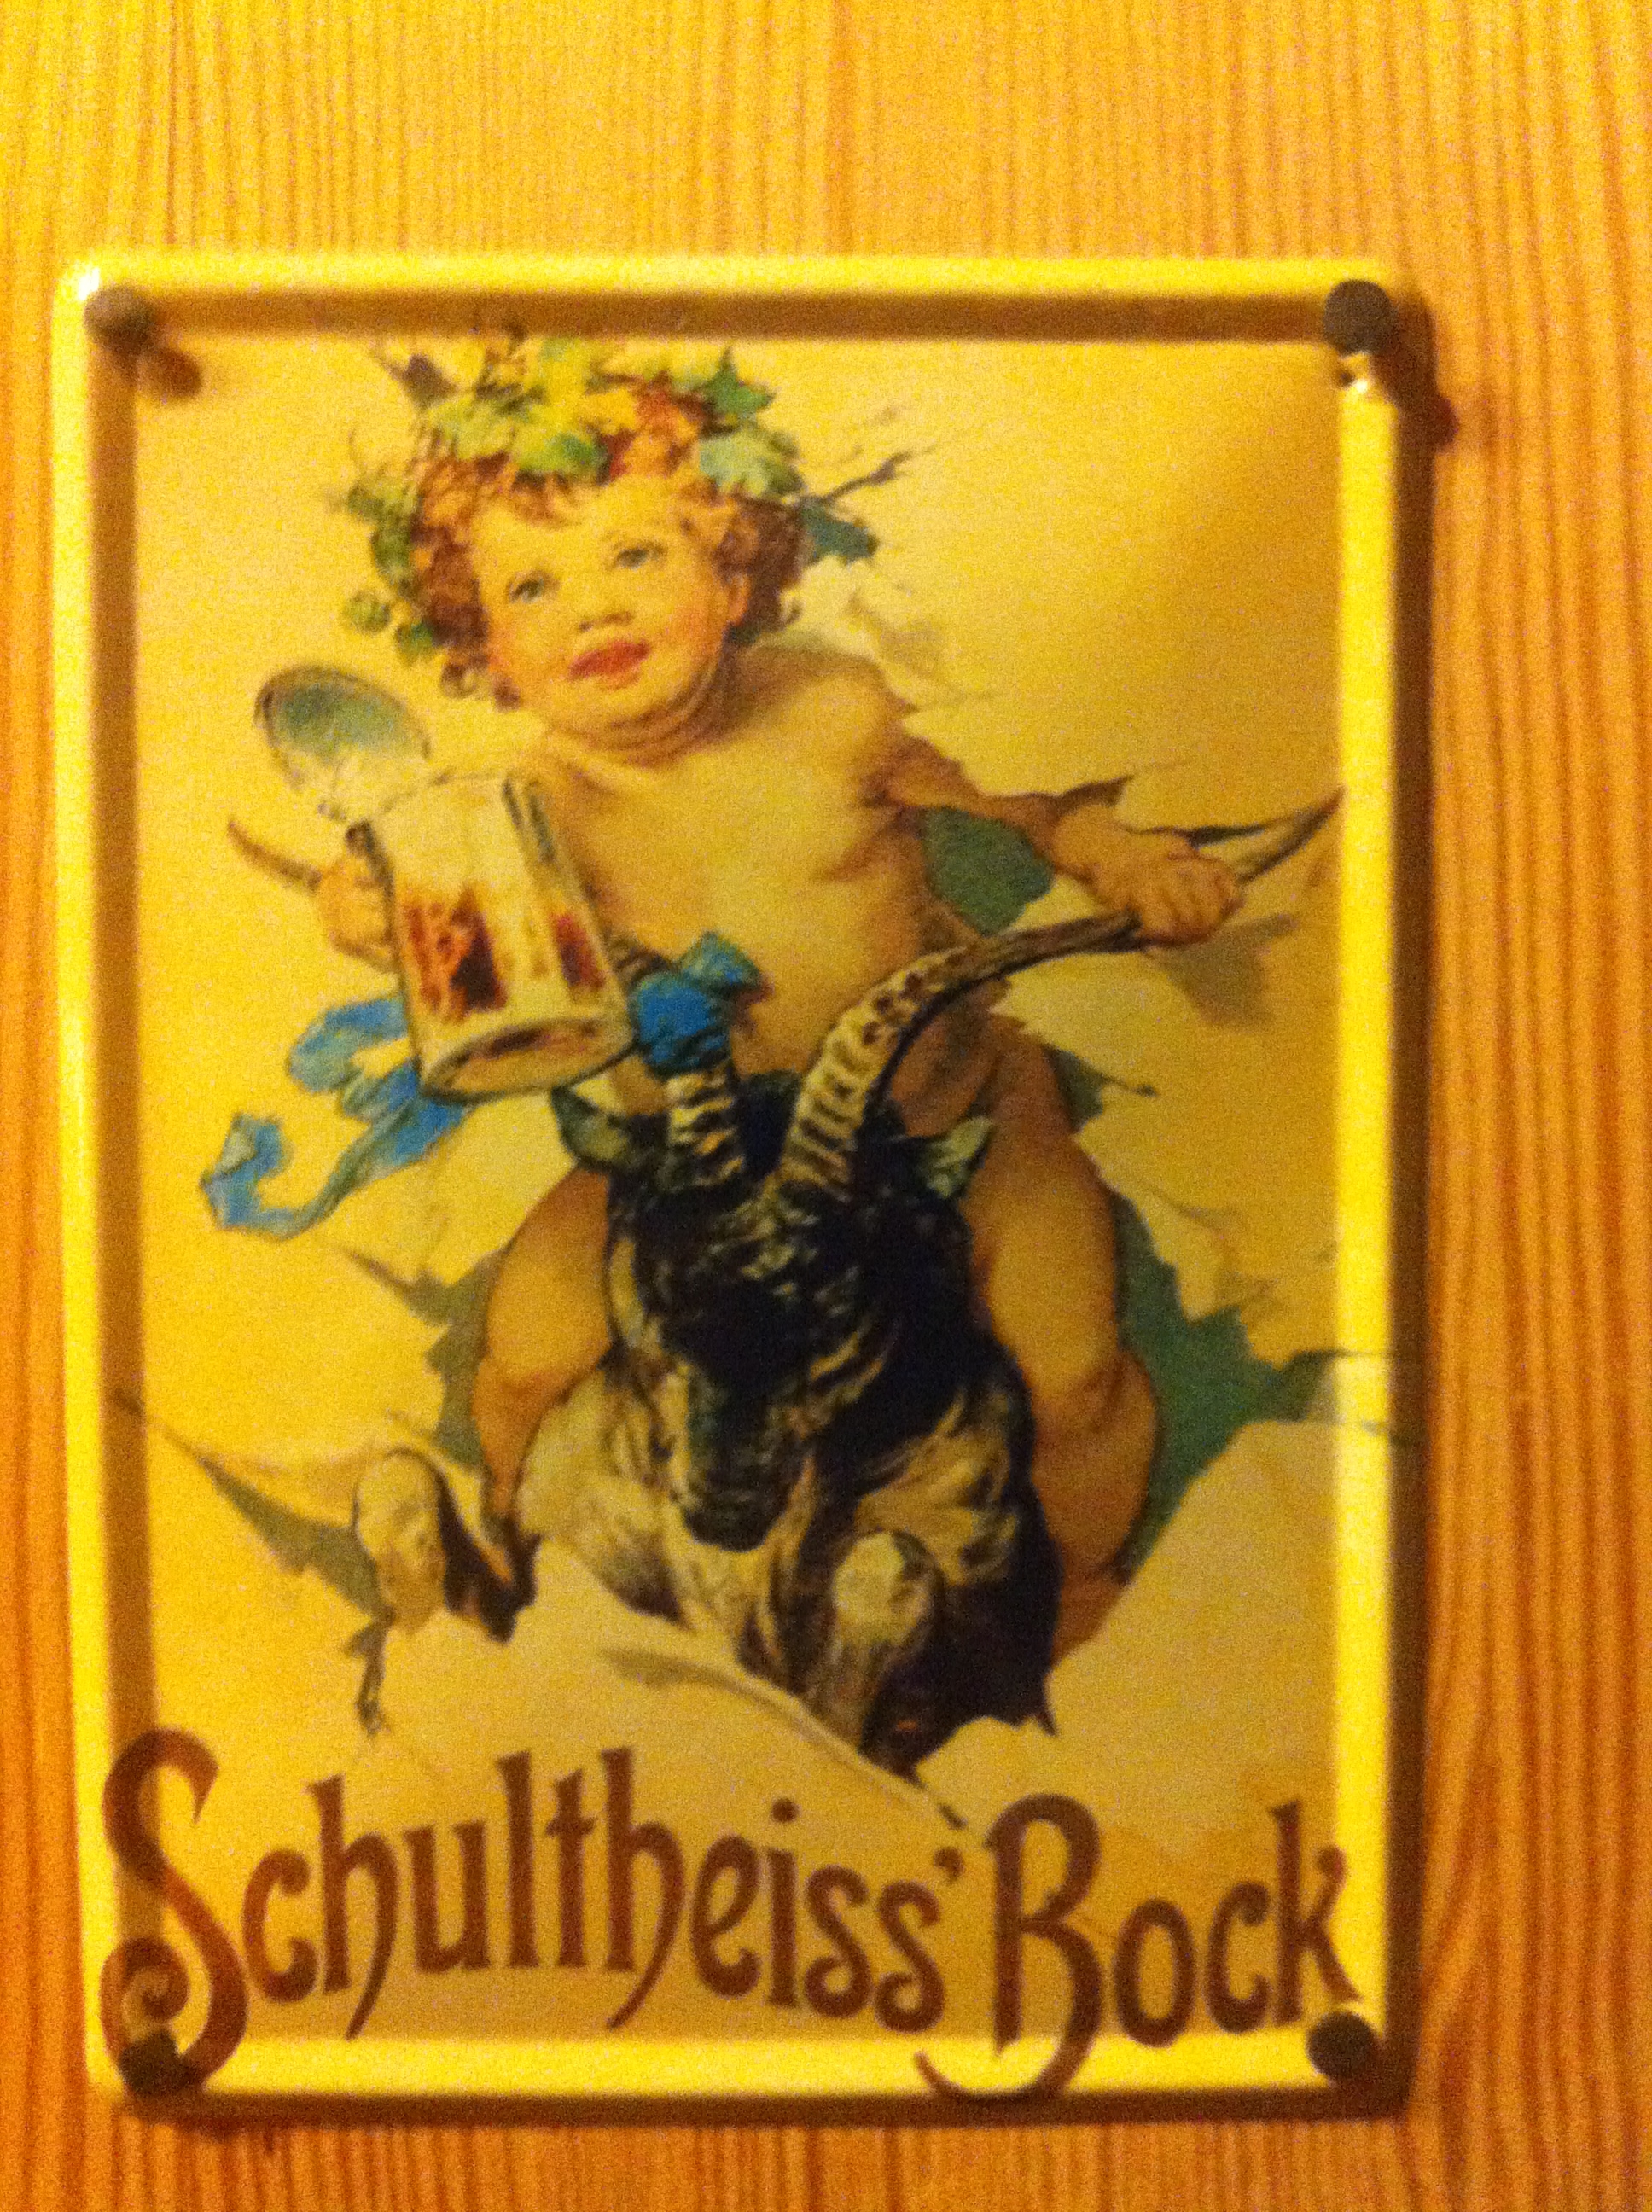 Blechschild der Berliner-Kindl-Schultheiss-Brauerei